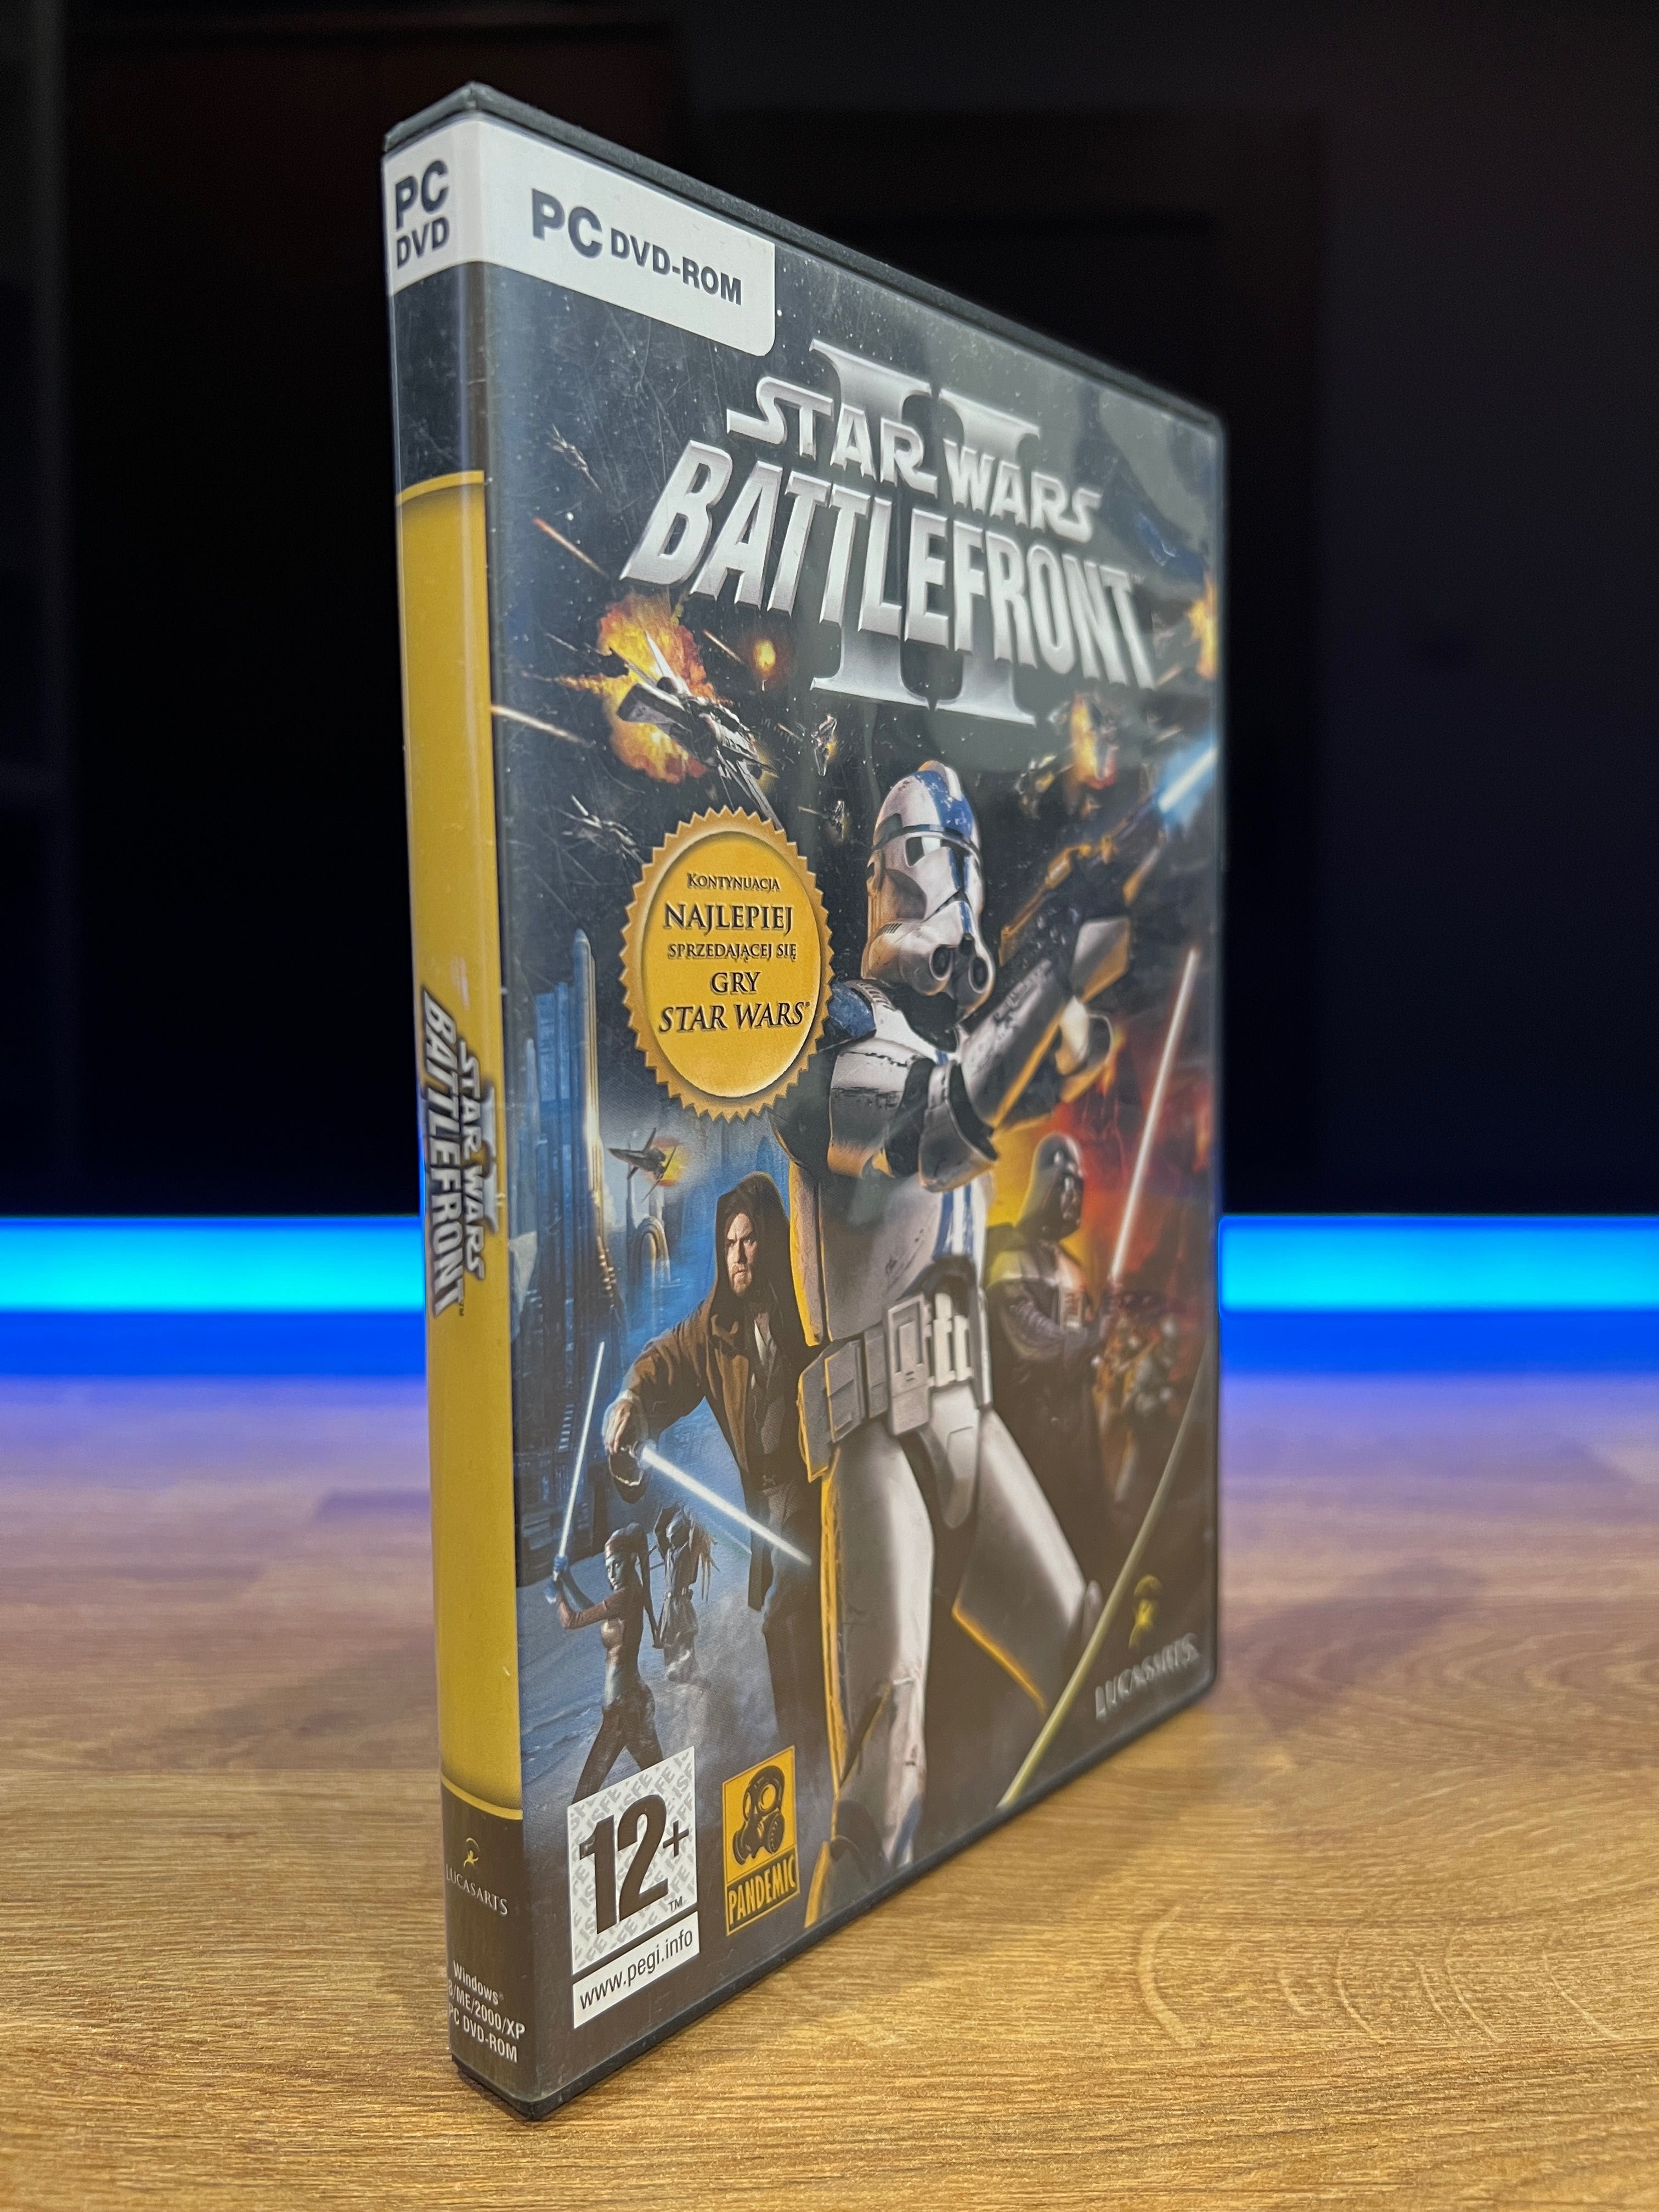 Star Wars Battlefront II (PC PL 2005) DVD BOX premierowe wydanie